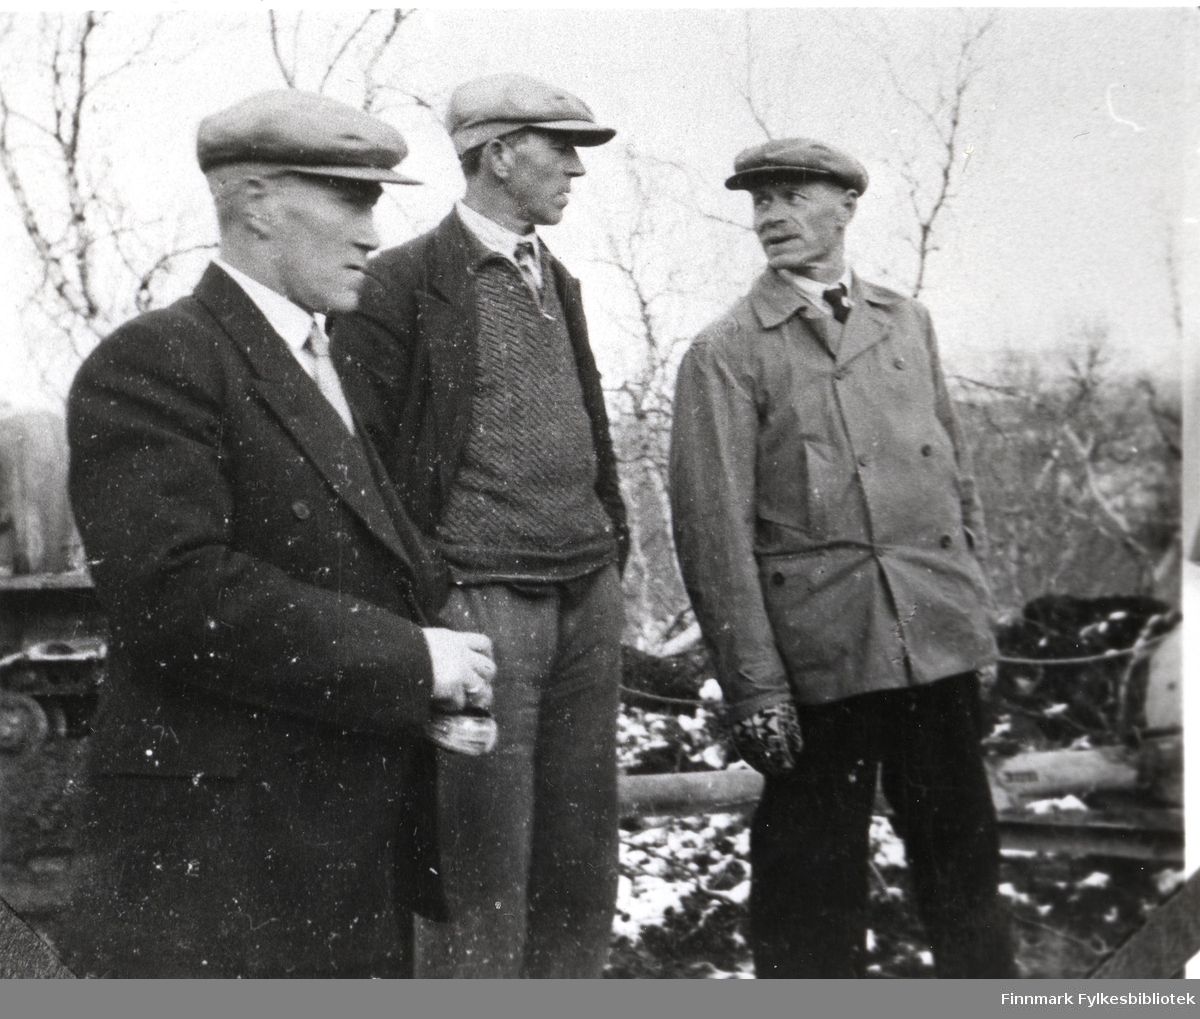 Ved åpningen av veien. Børselvfjellet 1940. Fra venstre formann Olav Pedersen, oppsynsmann Odin Holsmo og oppsynsmann Andreas Lundborg.